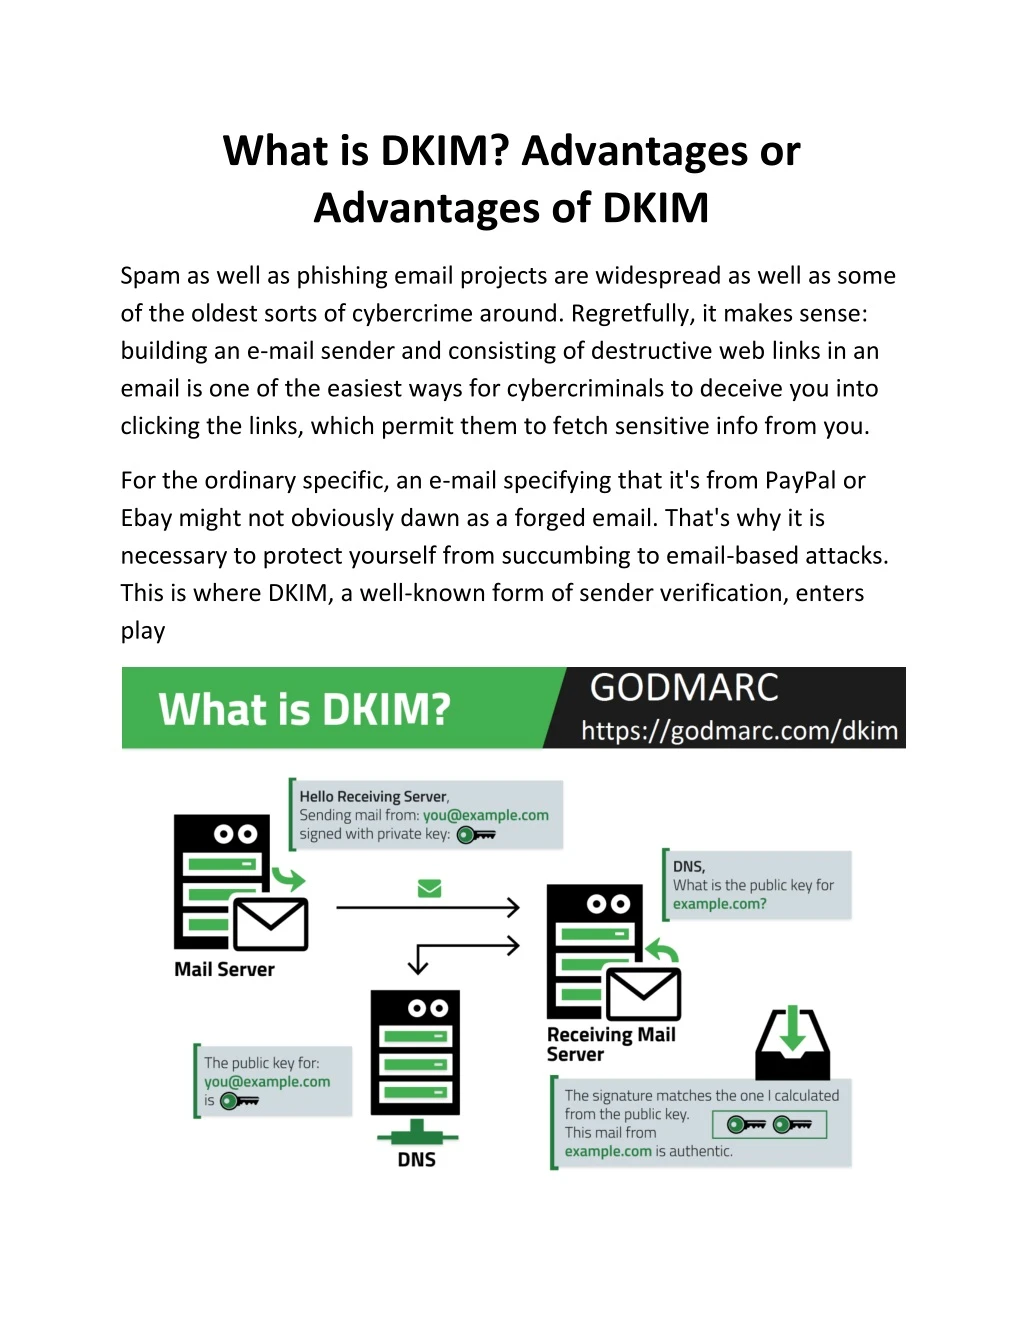 what is dkim advantages or advantages of dkim